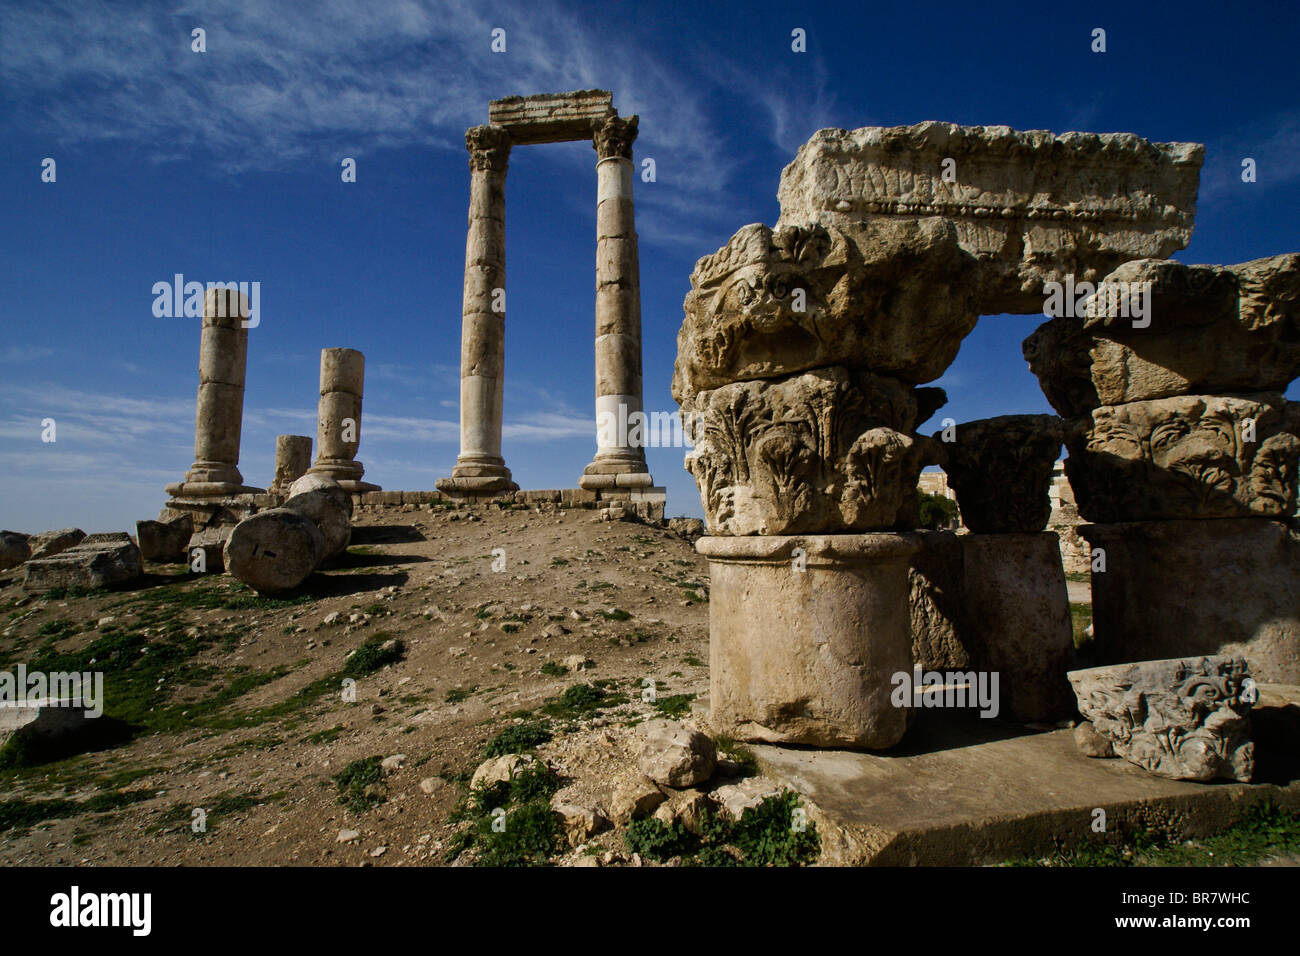 Temple of Hercules, Amman, Jordan Stock Photo